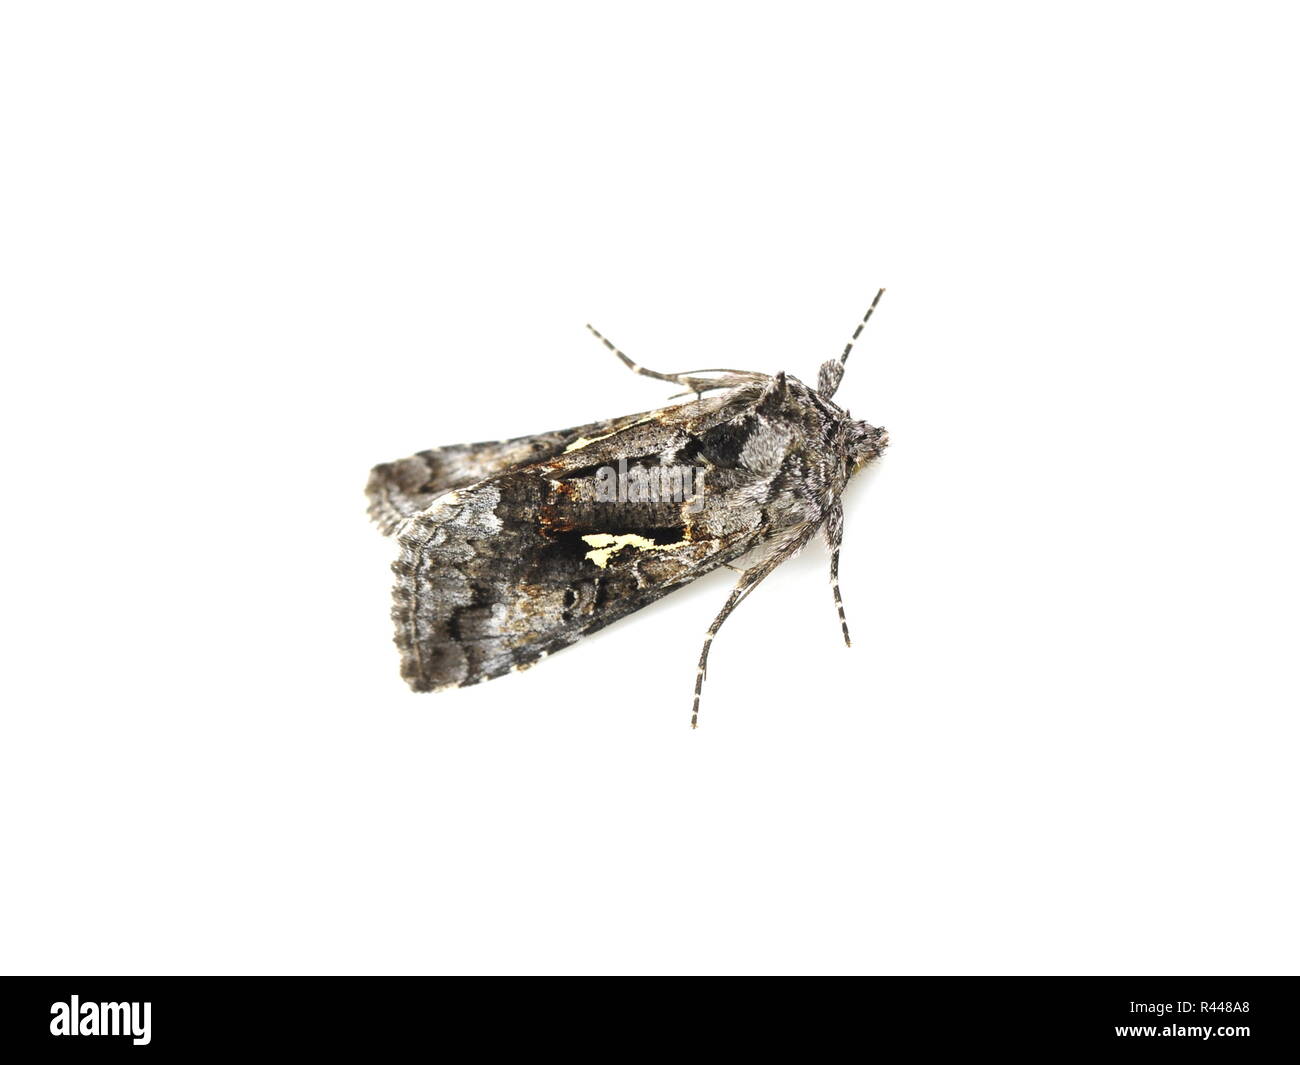 Silver y moth Banque d'images détourées - Alamy